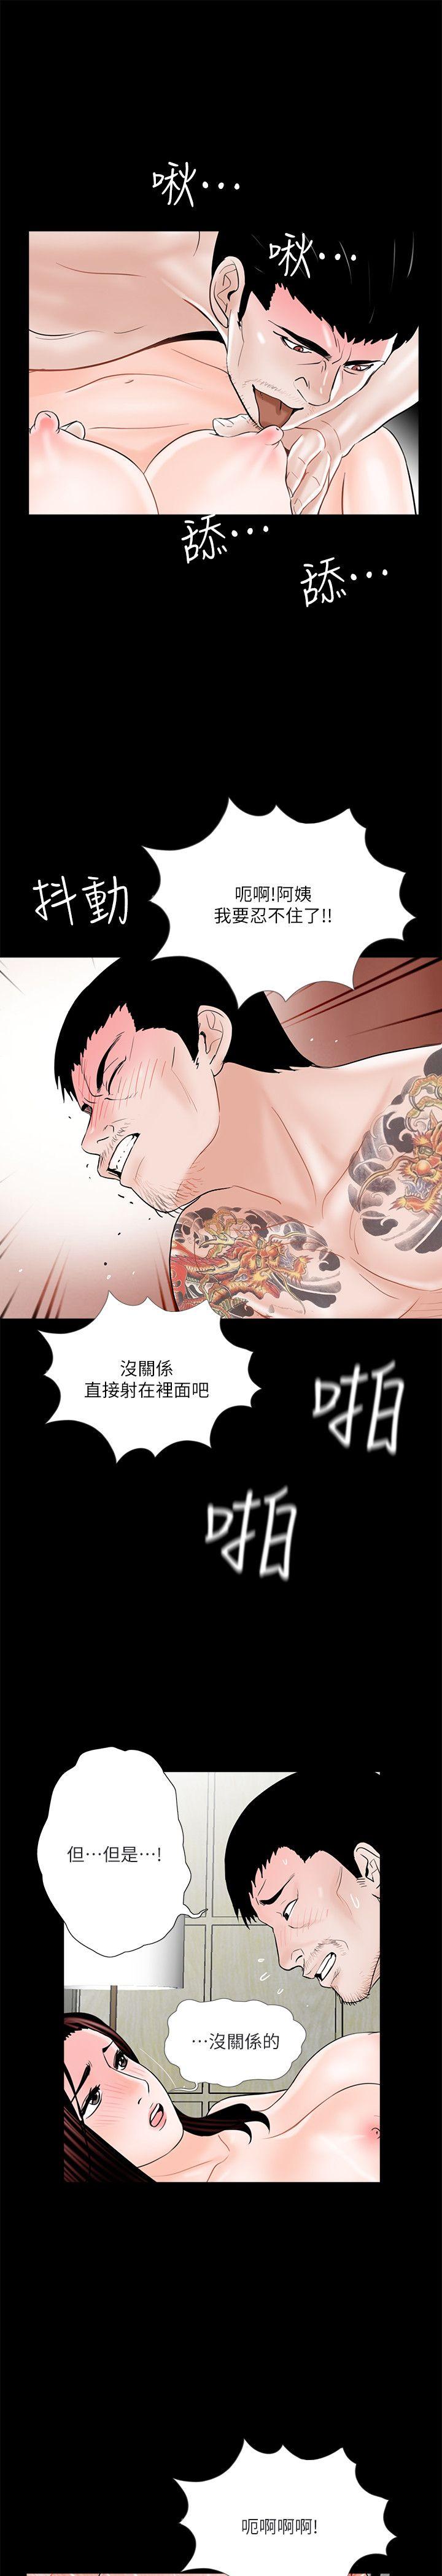 韩国污漫画 夢魘 第37话-坏老公[2 18